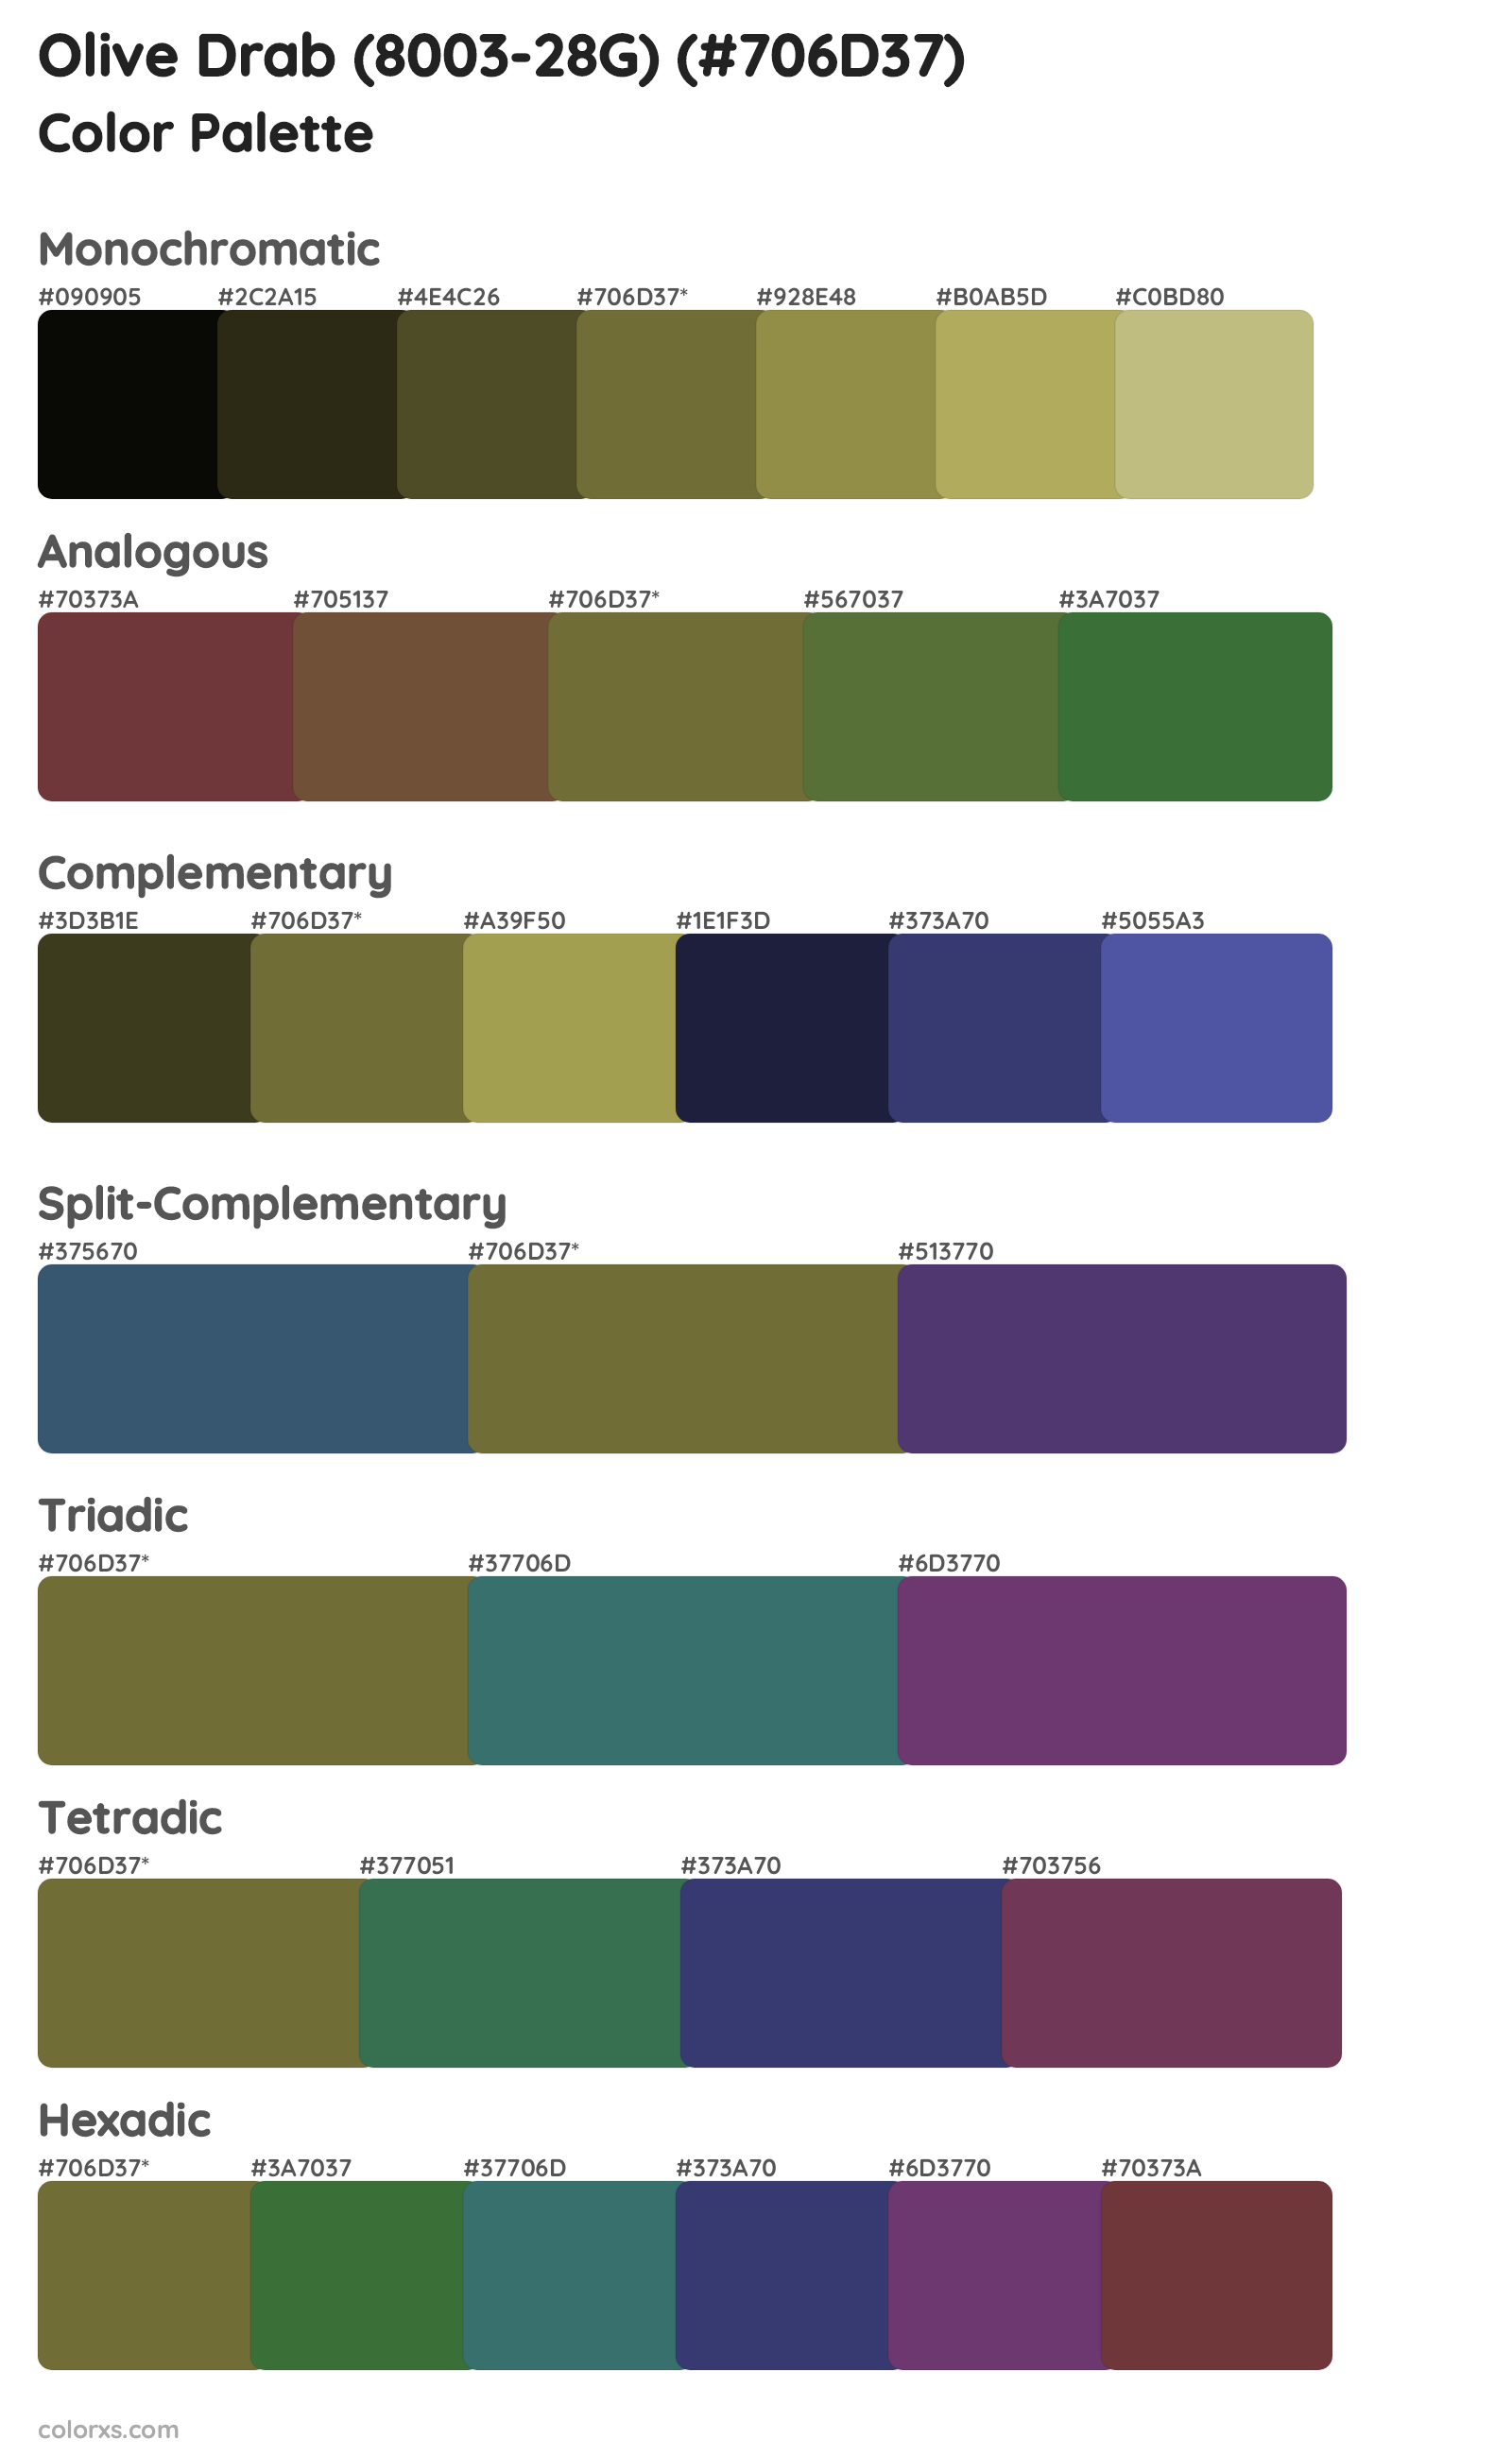 Olive Drab (8003-28G) Color Scheme Palettes